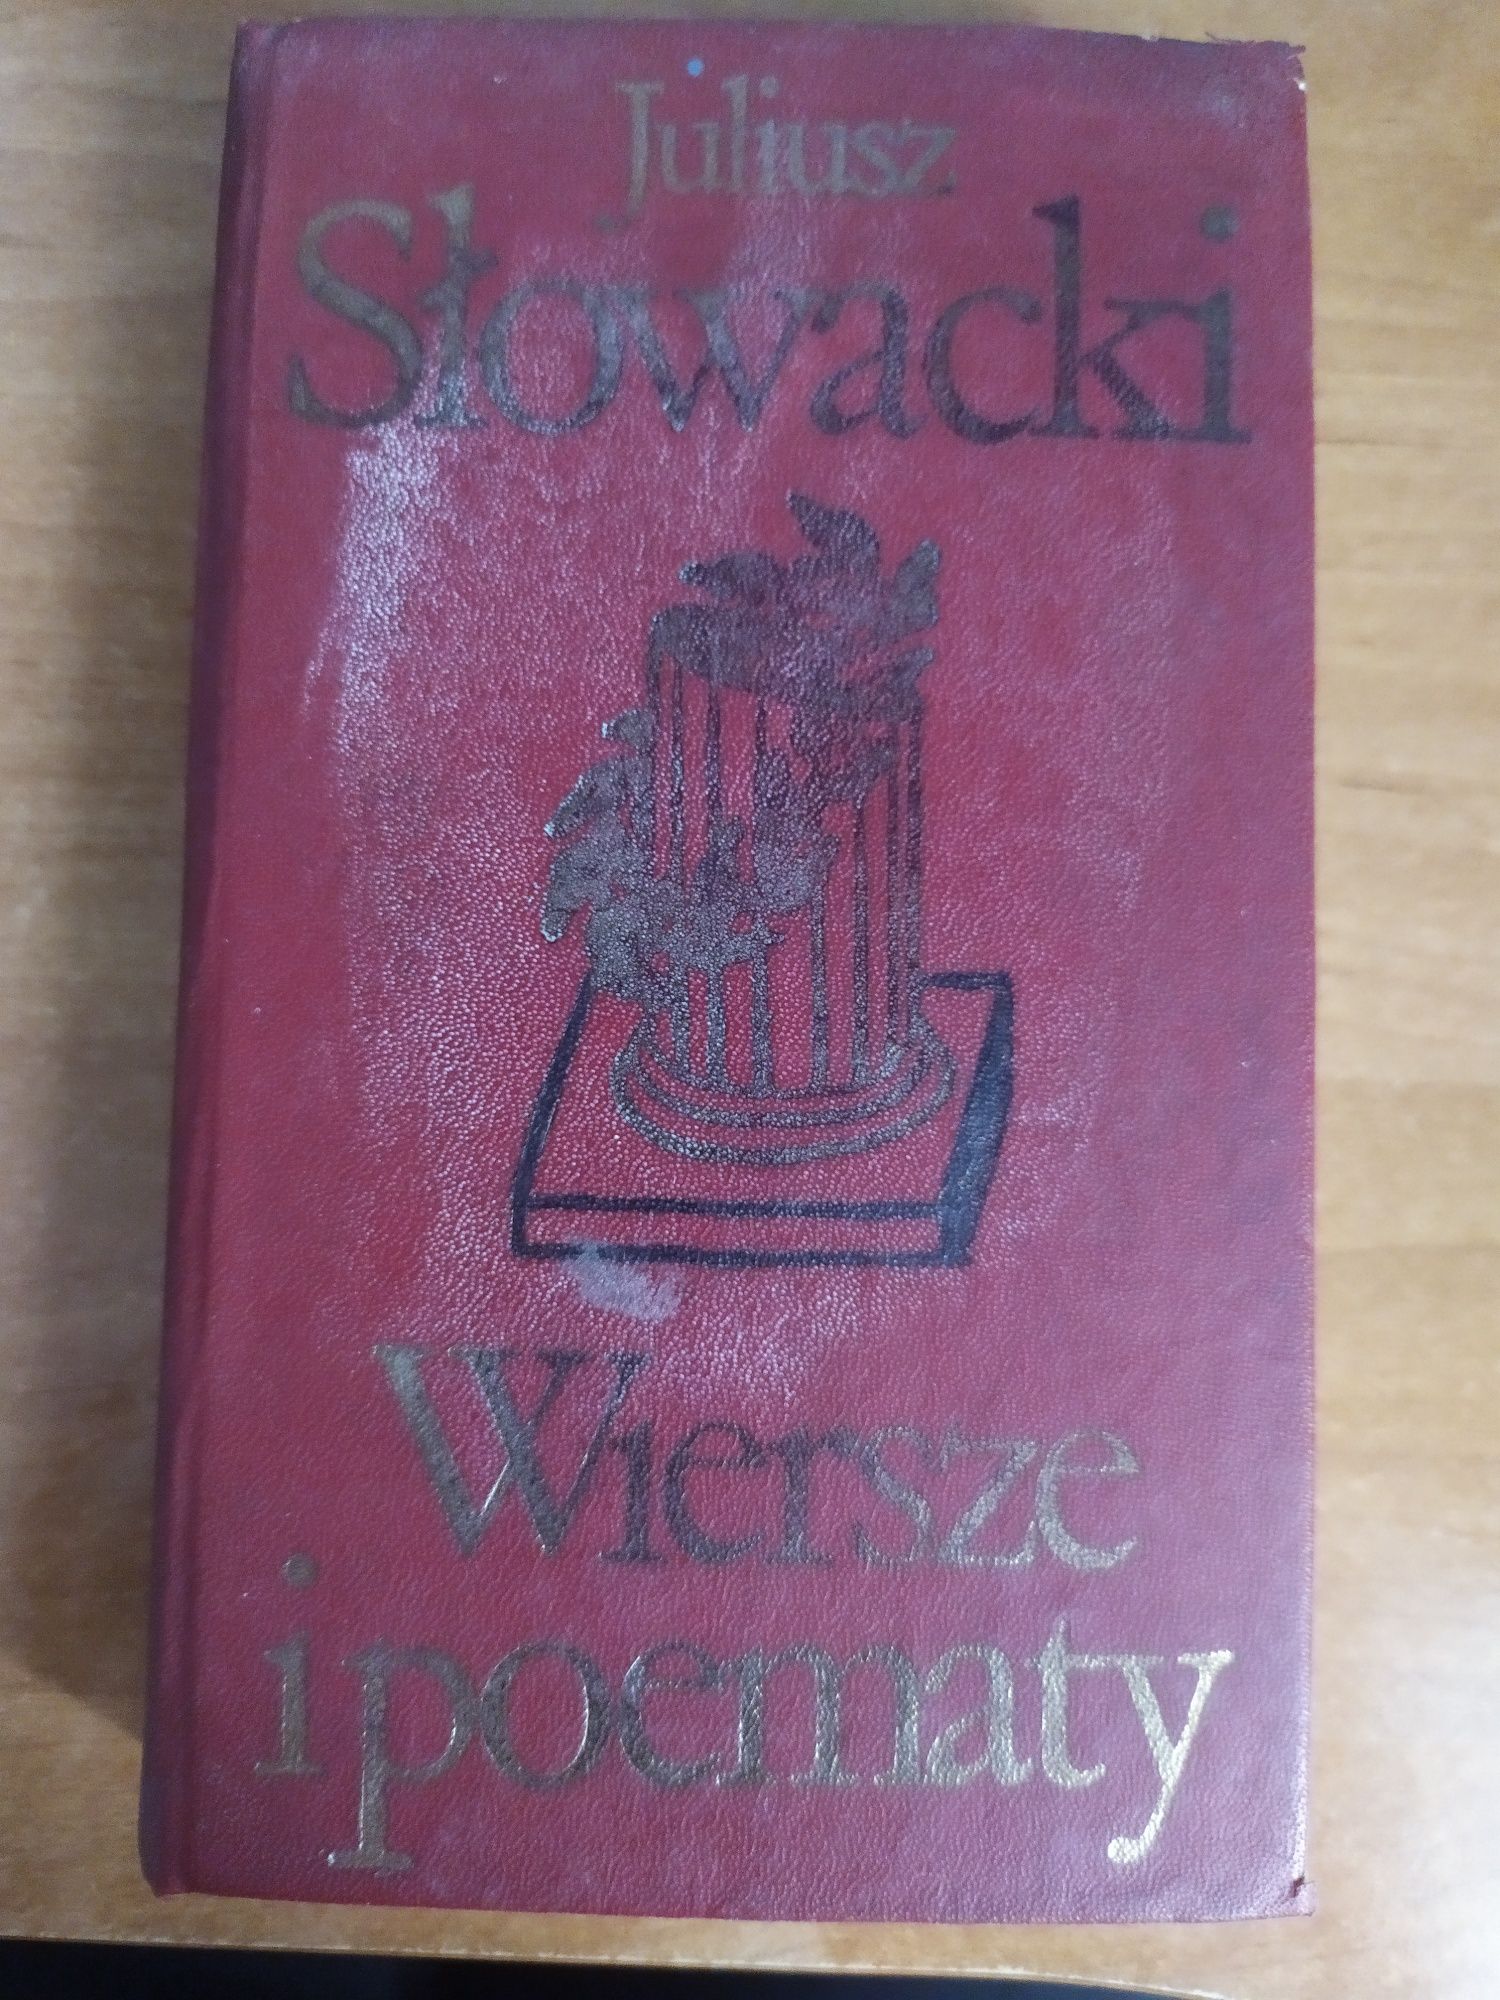 Książka Juliusz Słowacki "Wiersze i poematy"